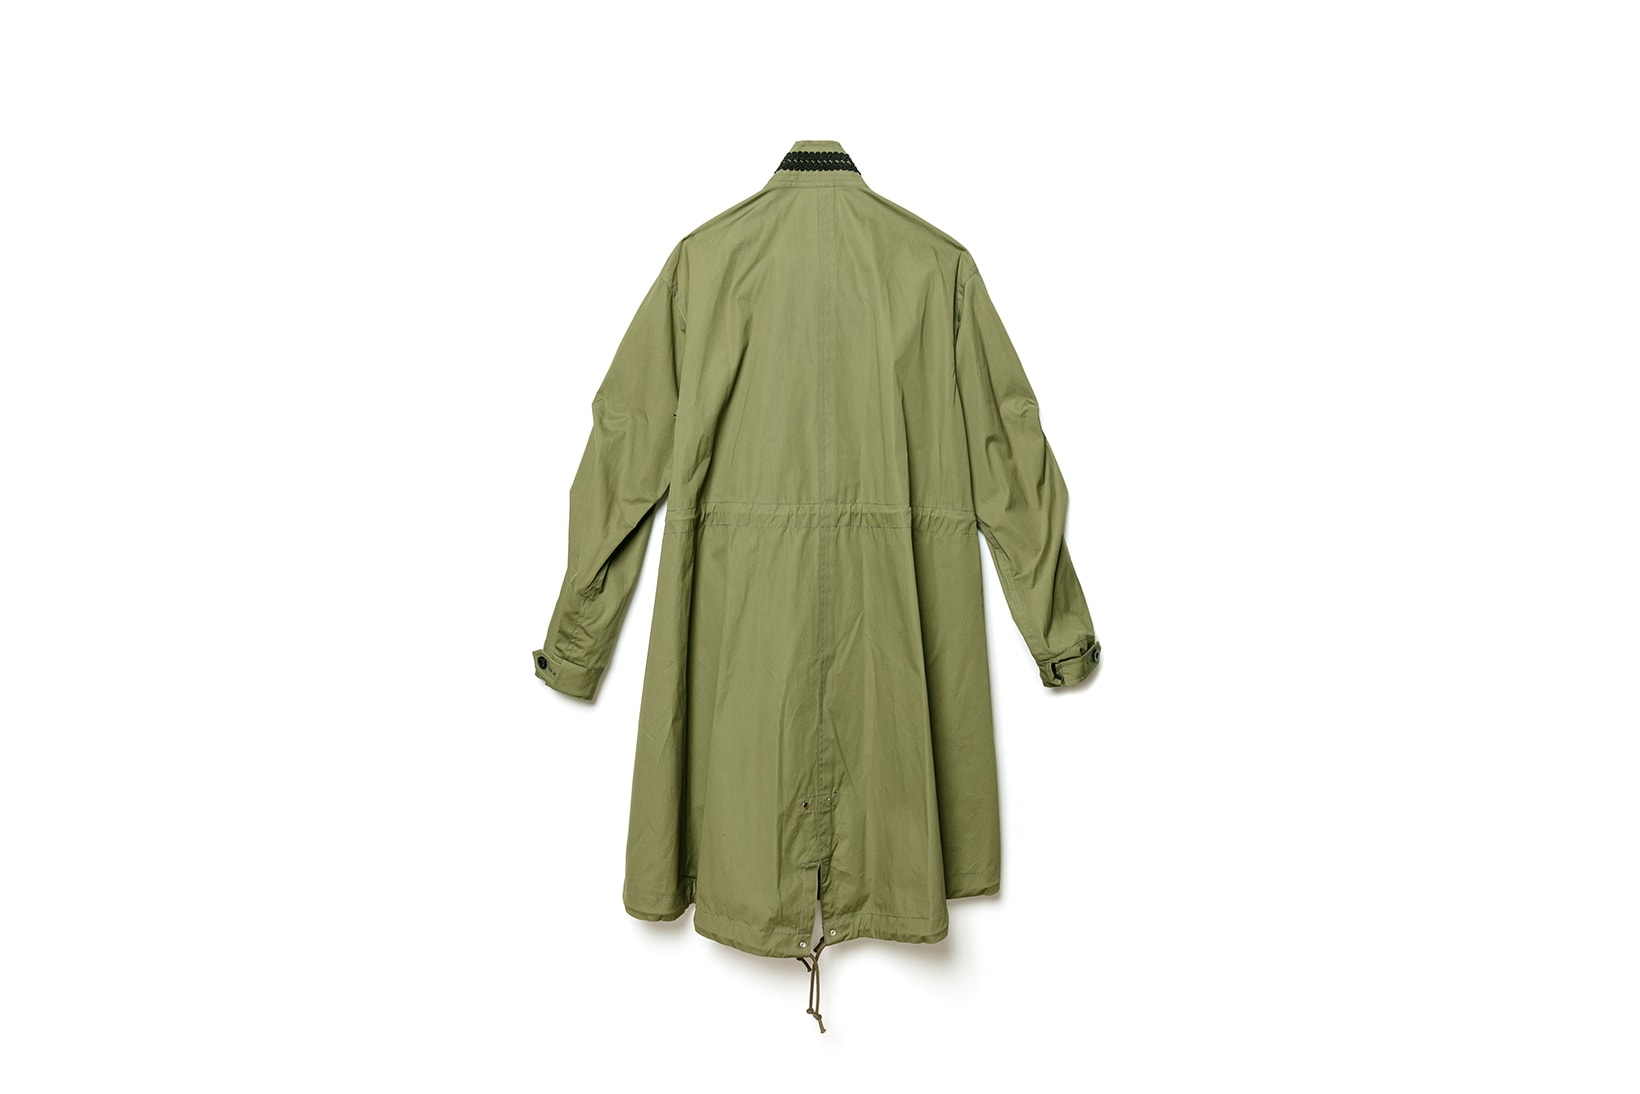 sacai dover street market exclusive napoleon jacket mods style coat black khaki outerwear fall winter